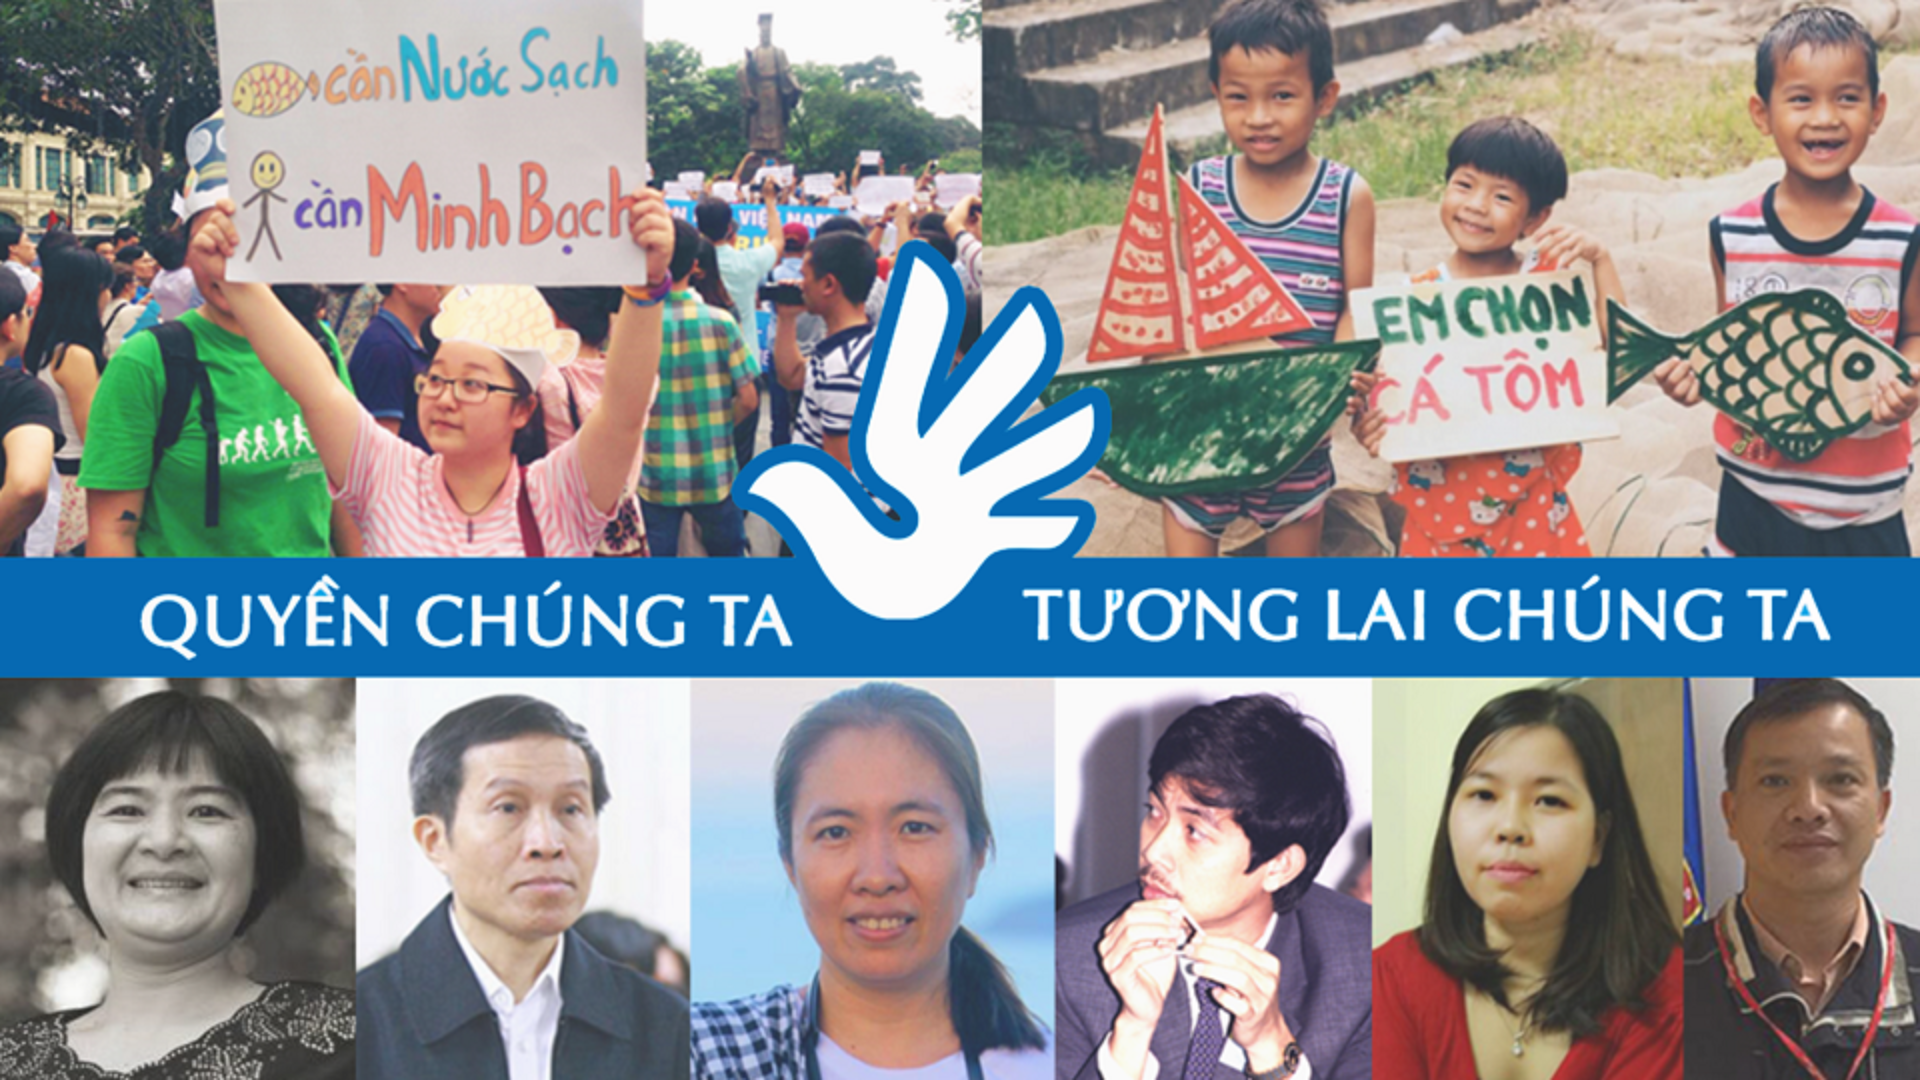 (Tiếng Việt) Toàn cảnh Chiến dịch Vận động Nhân quyền của VOICE tại UPR năm 2017